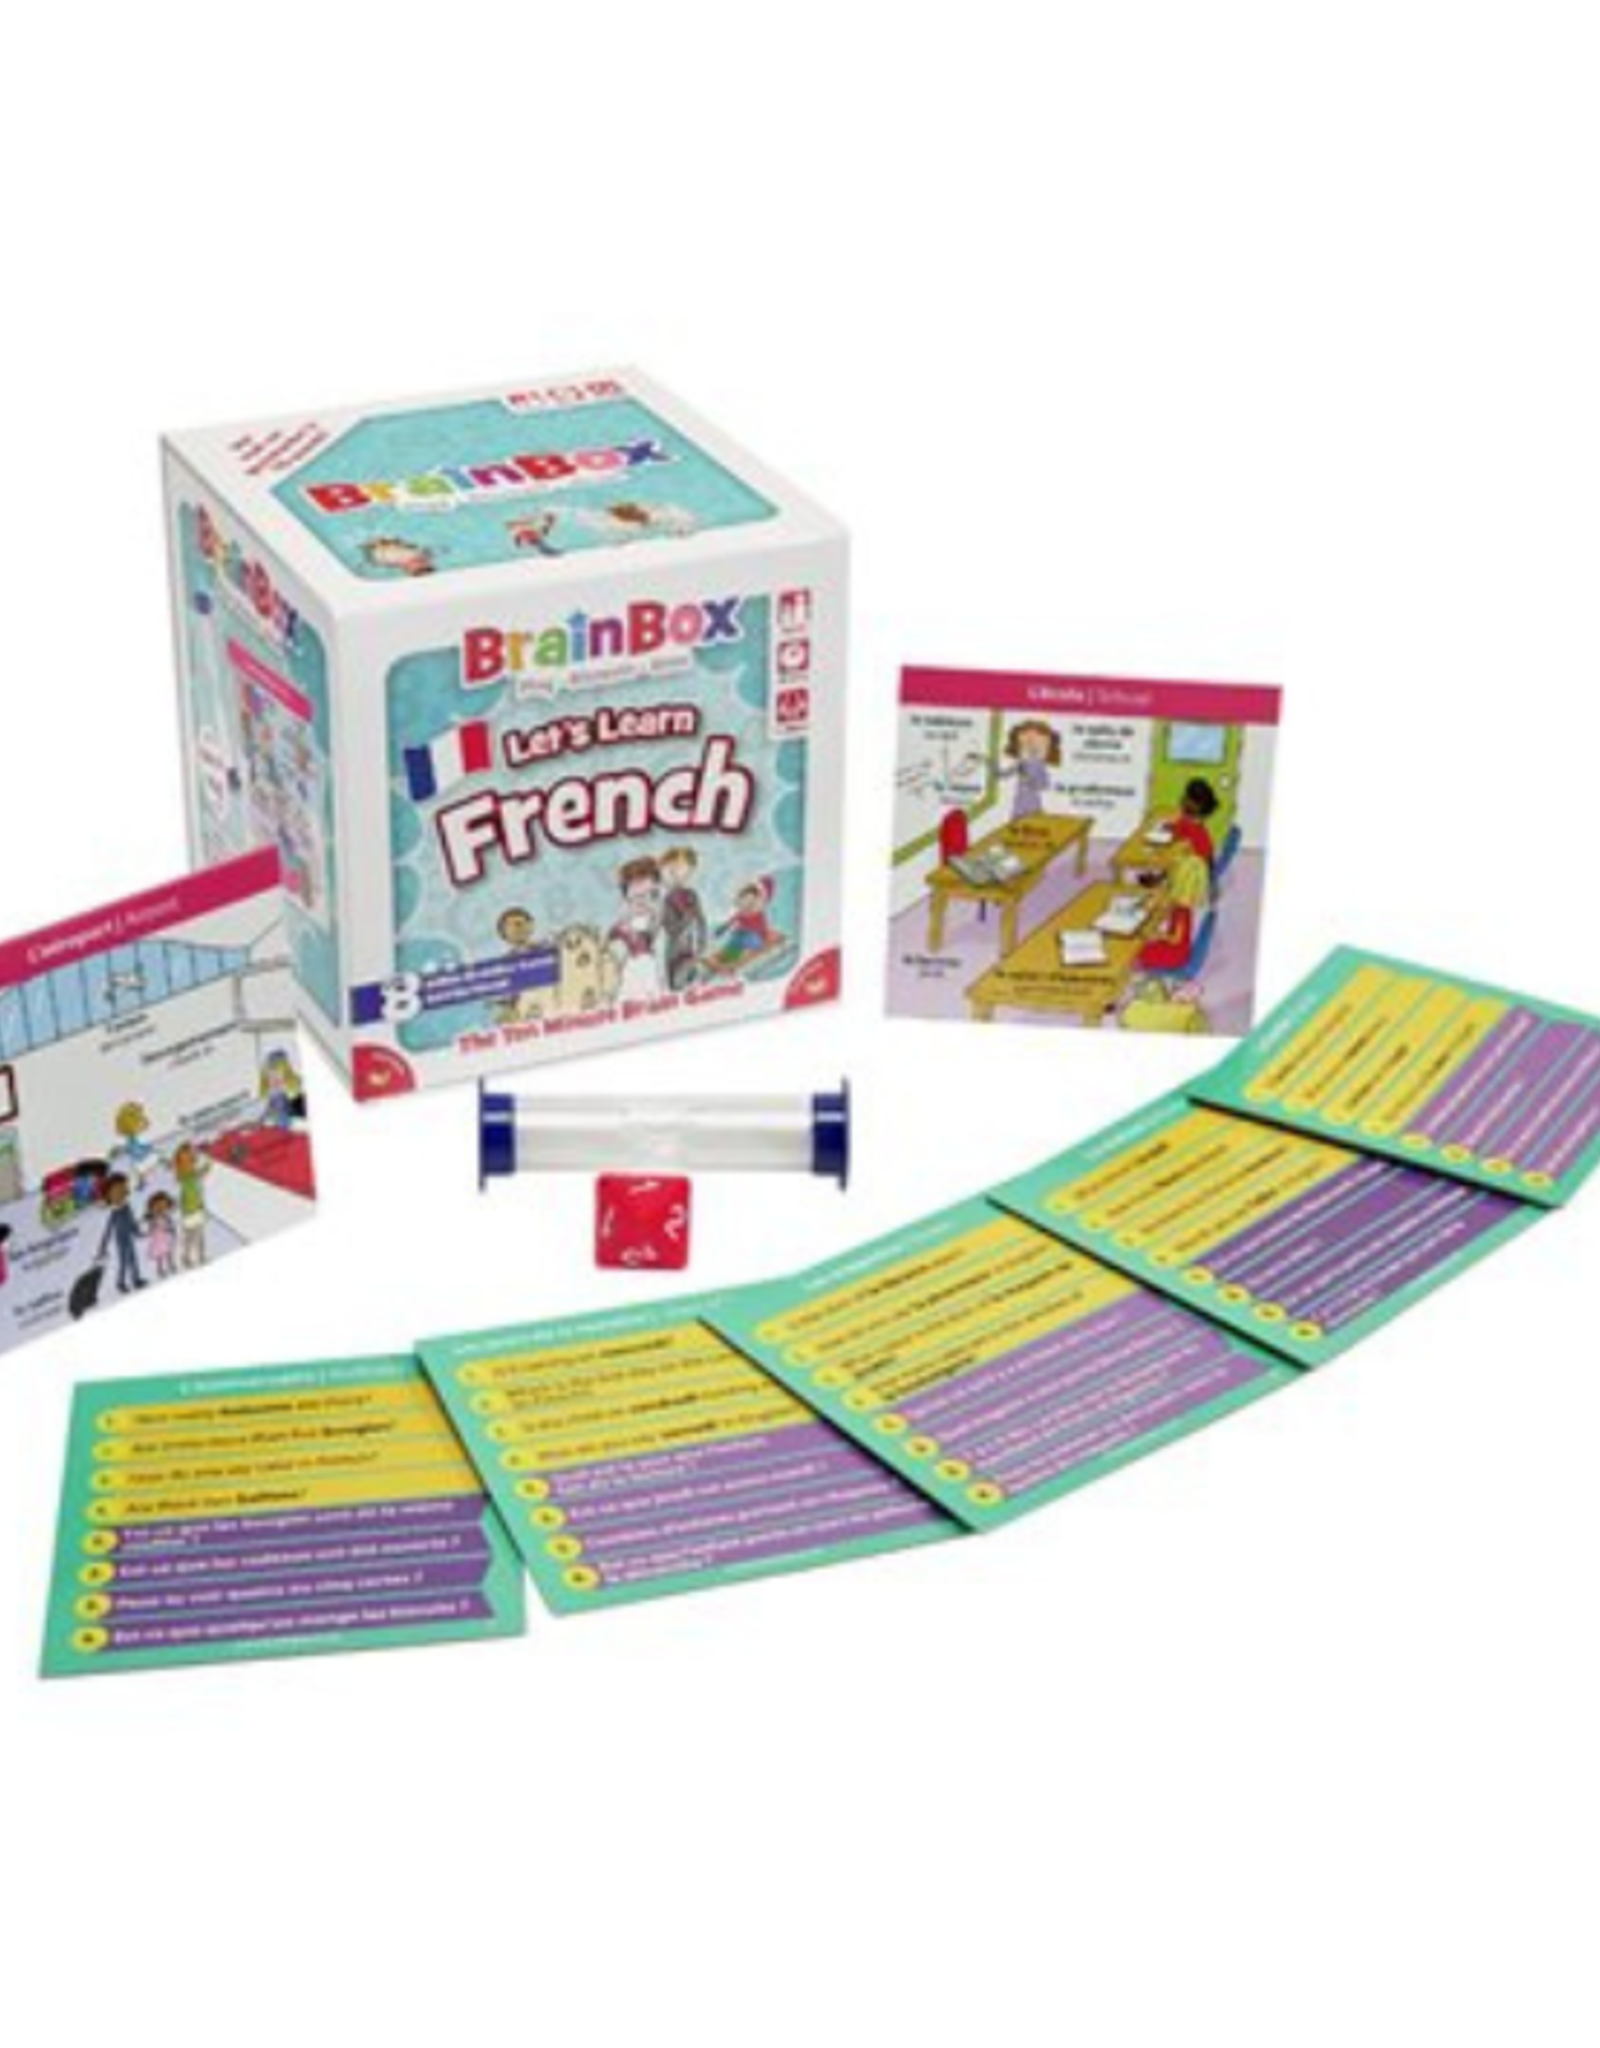 Bezzer Wizzer Studio - Brainbox: Let's Learn French